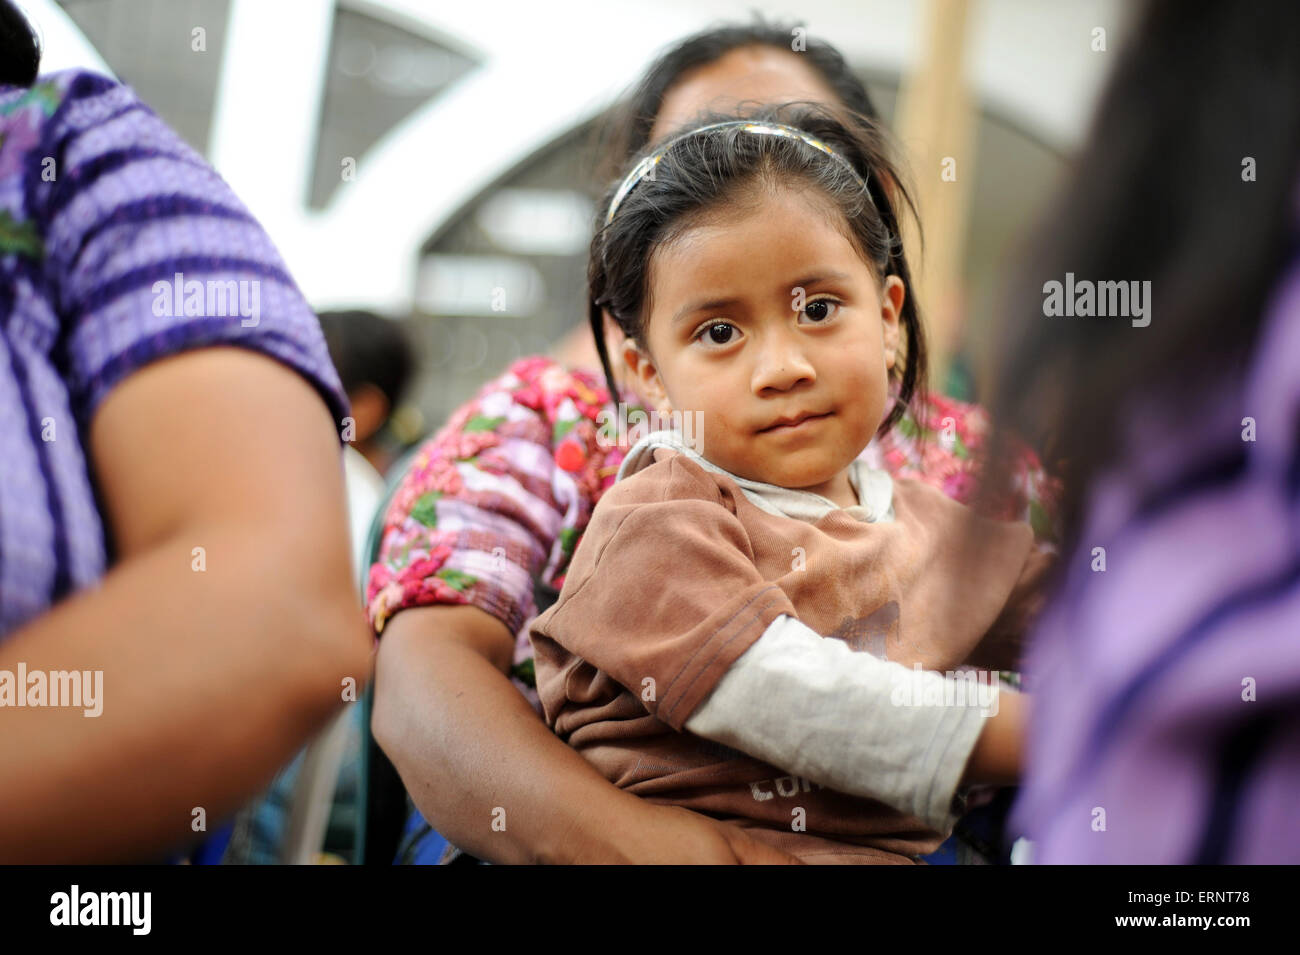 Guatemala maya indigenous girl with her mother in Panajachel, Solola, Guatemala. Stock Photo